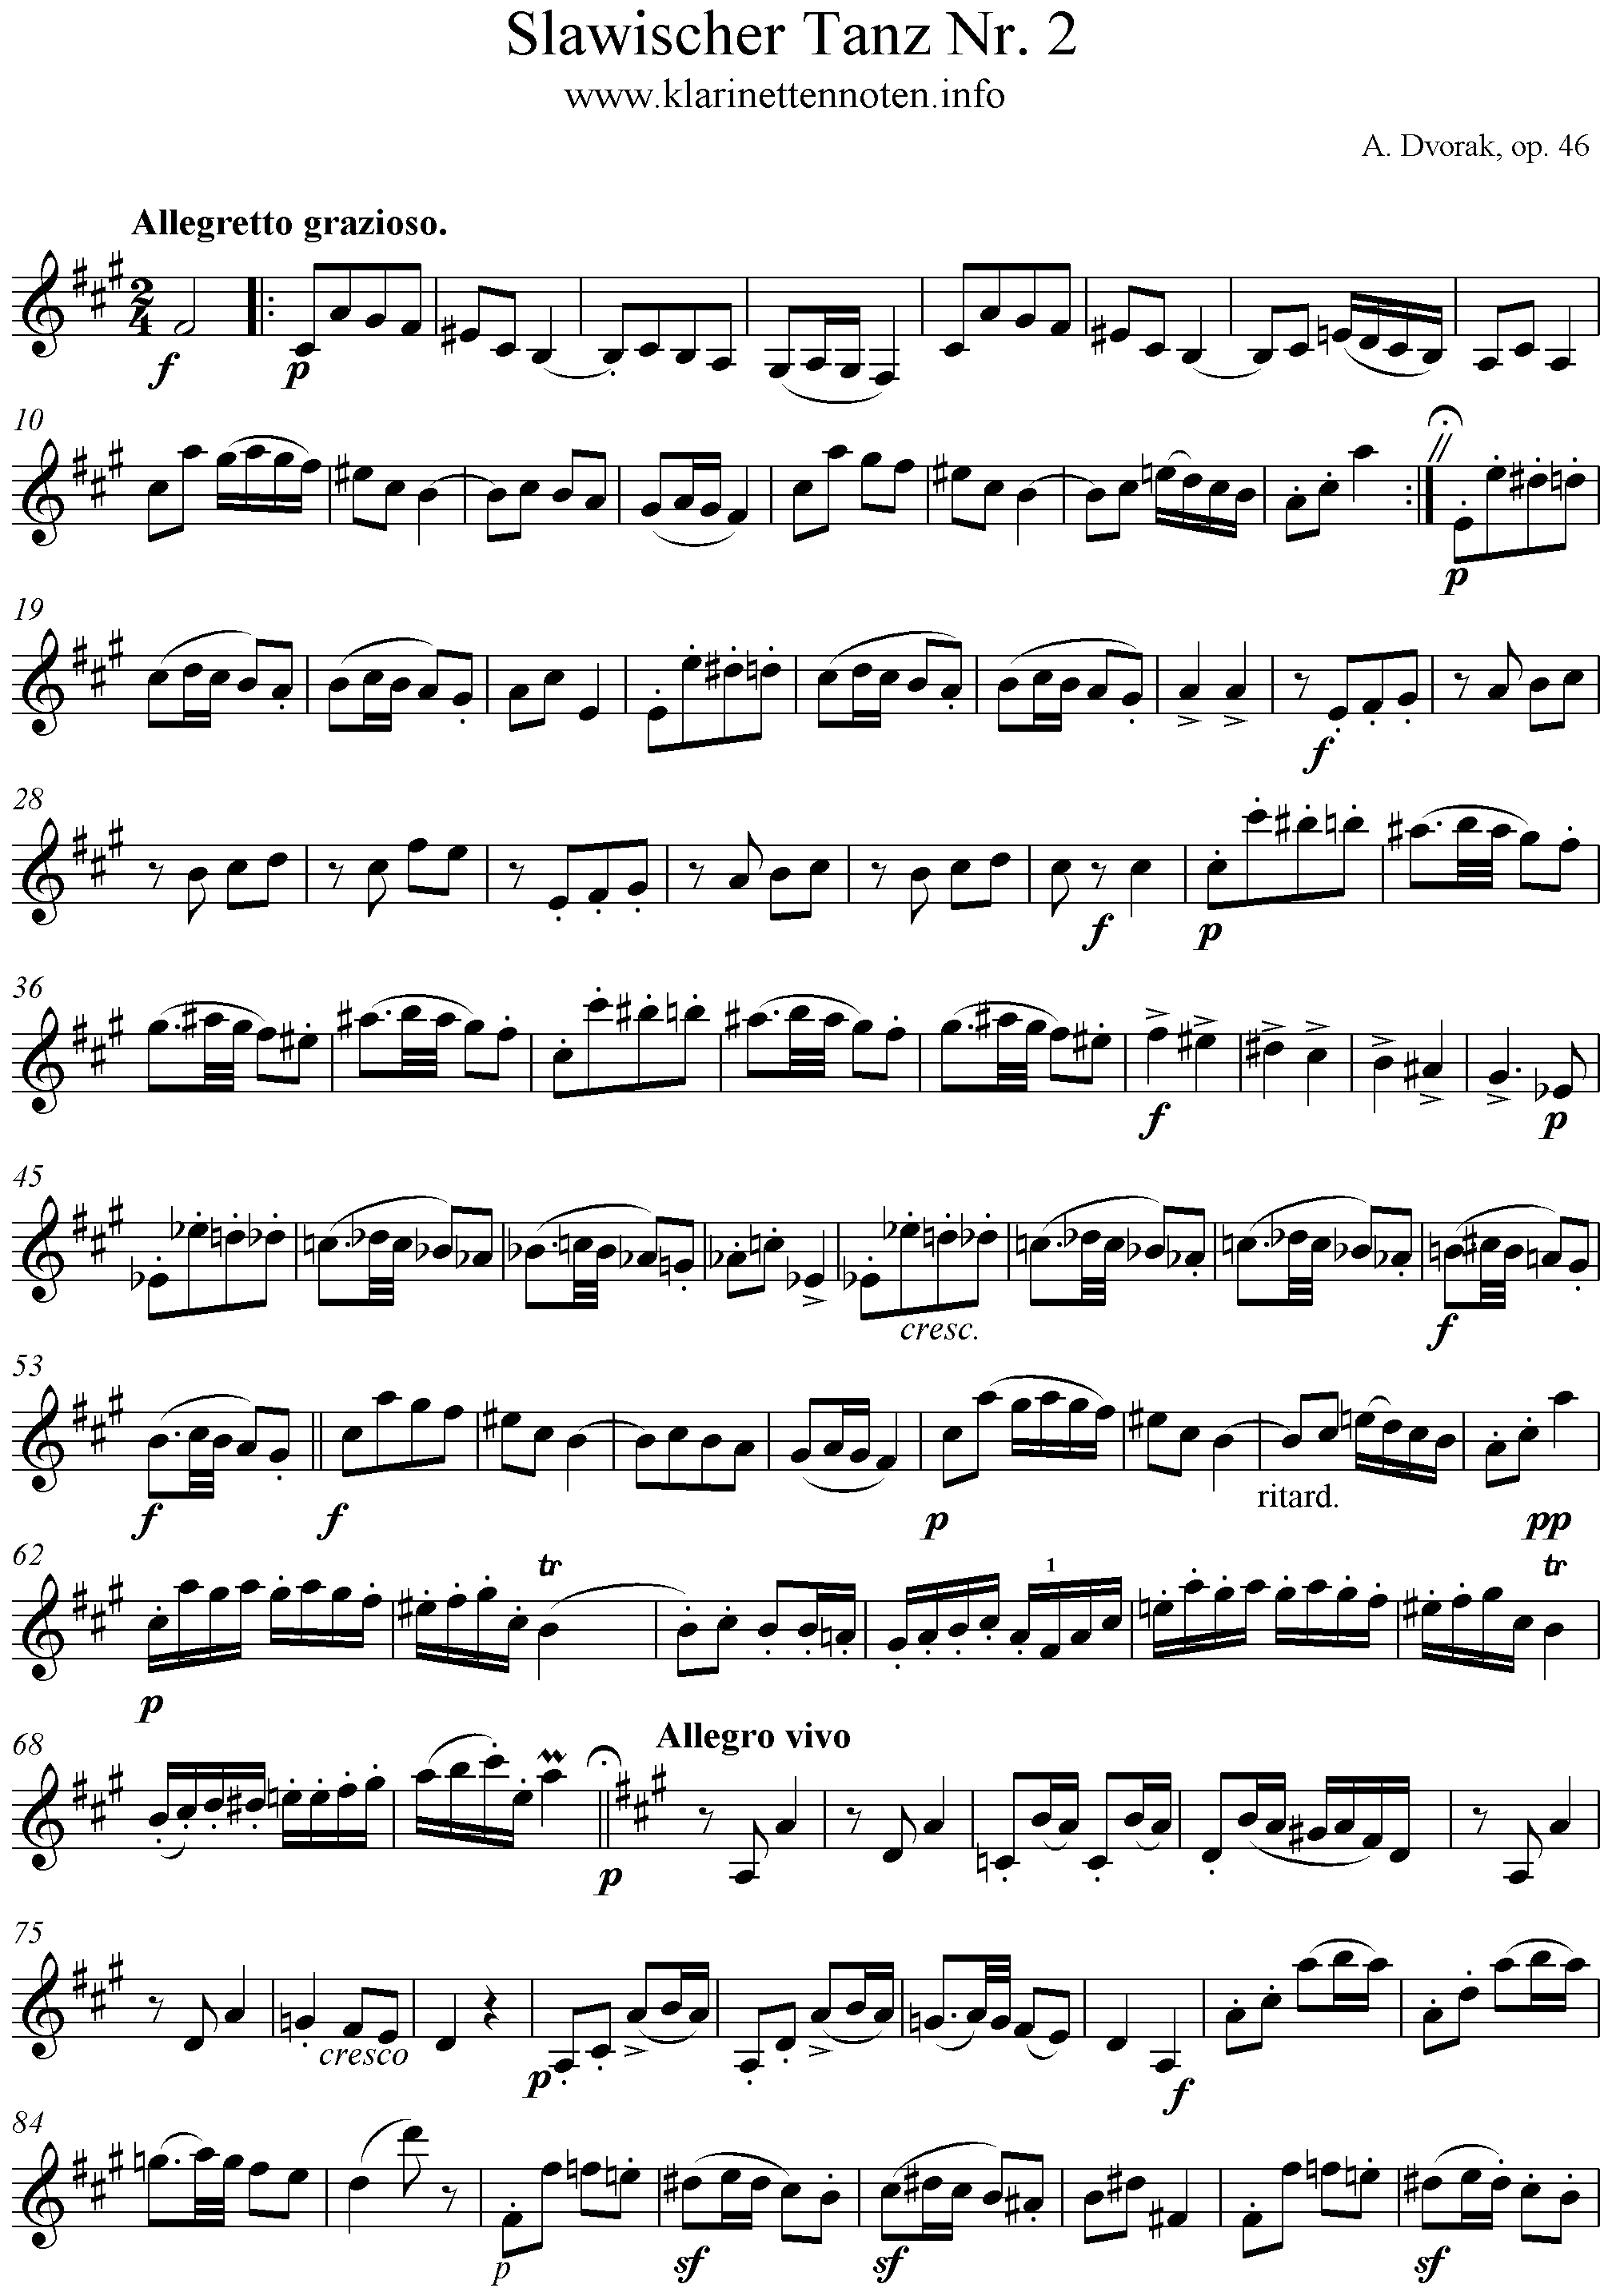 Slawischer Tanz No. 2, Dvorak, op. 46, Clarinet, Klarinette